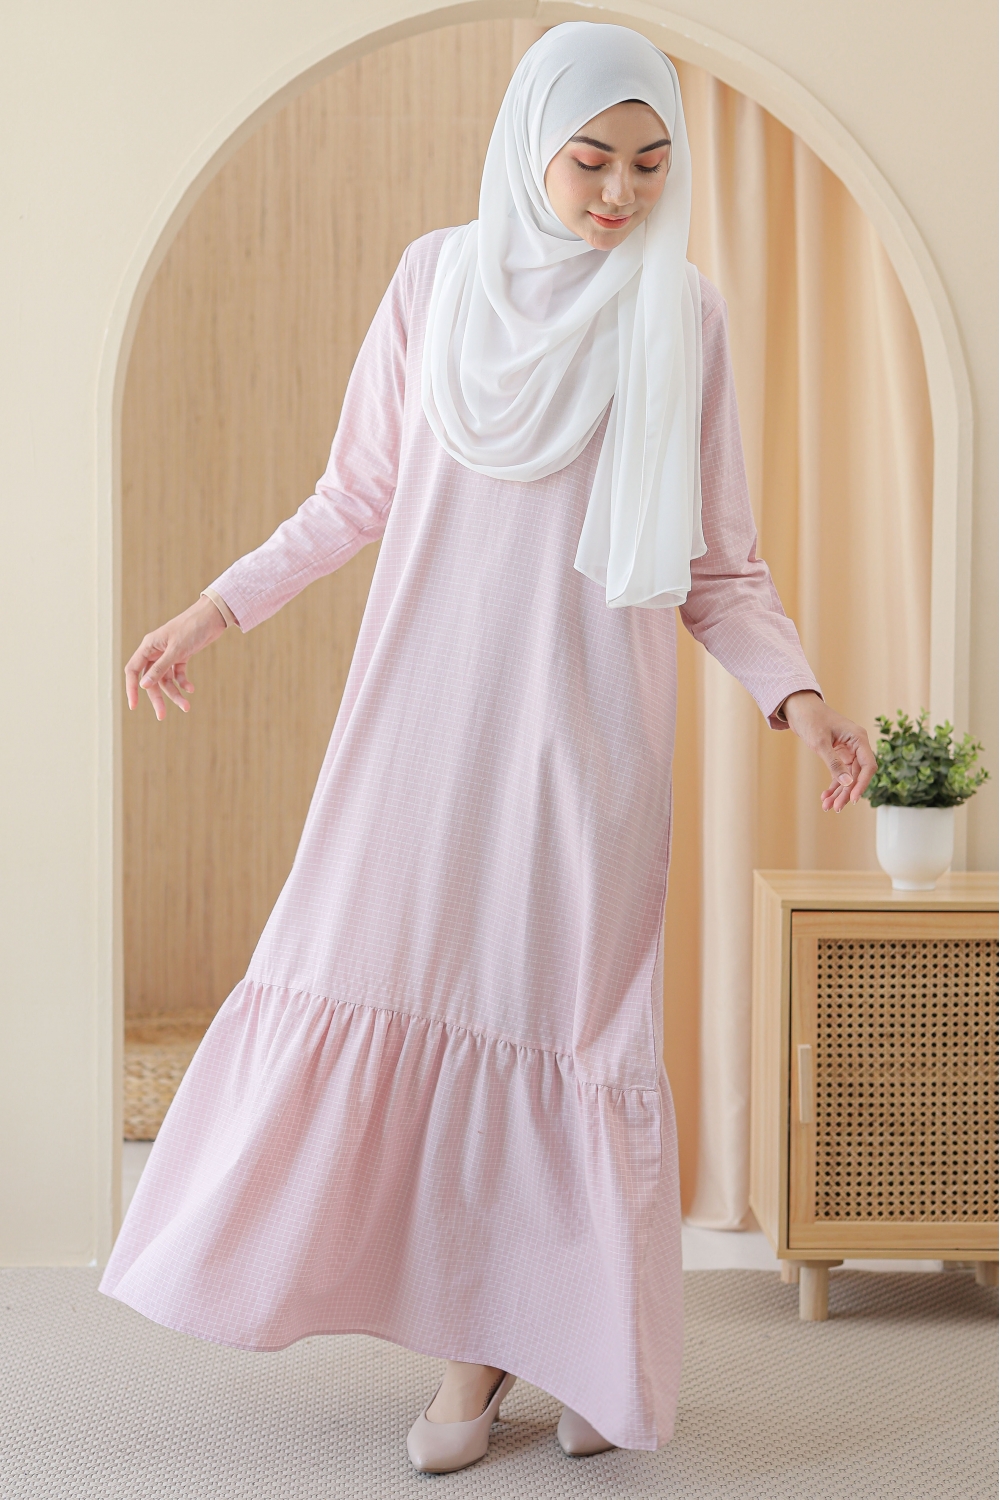 SAMARA - TARA Dress in Soft Pink